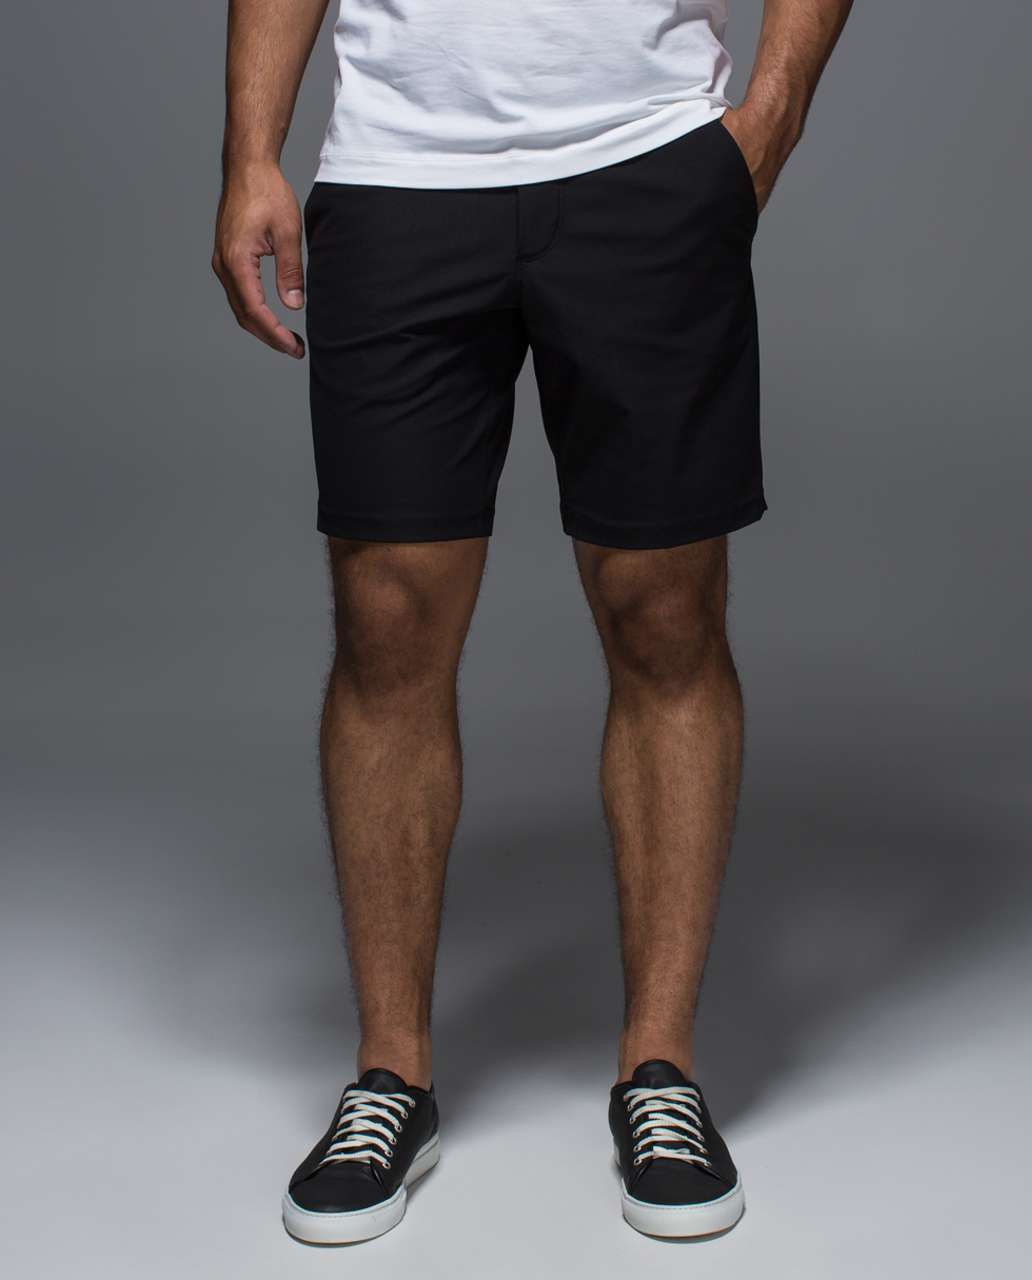 abc shorts lululemon